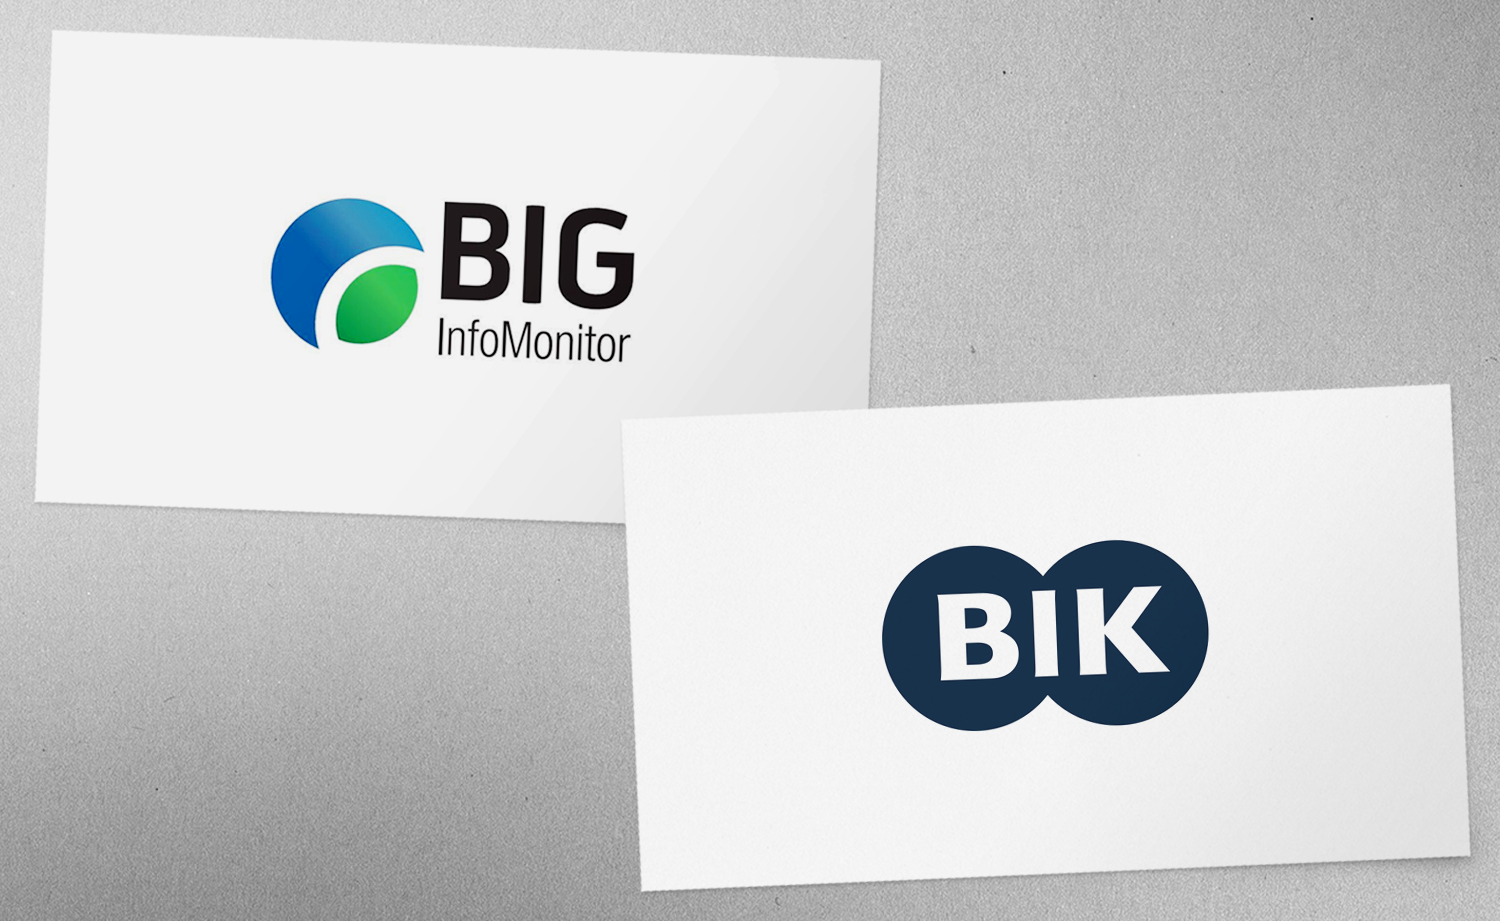 Biuro Podróży Reklamy będzie obsługiwać BIK oraz BIG InfoMonitor